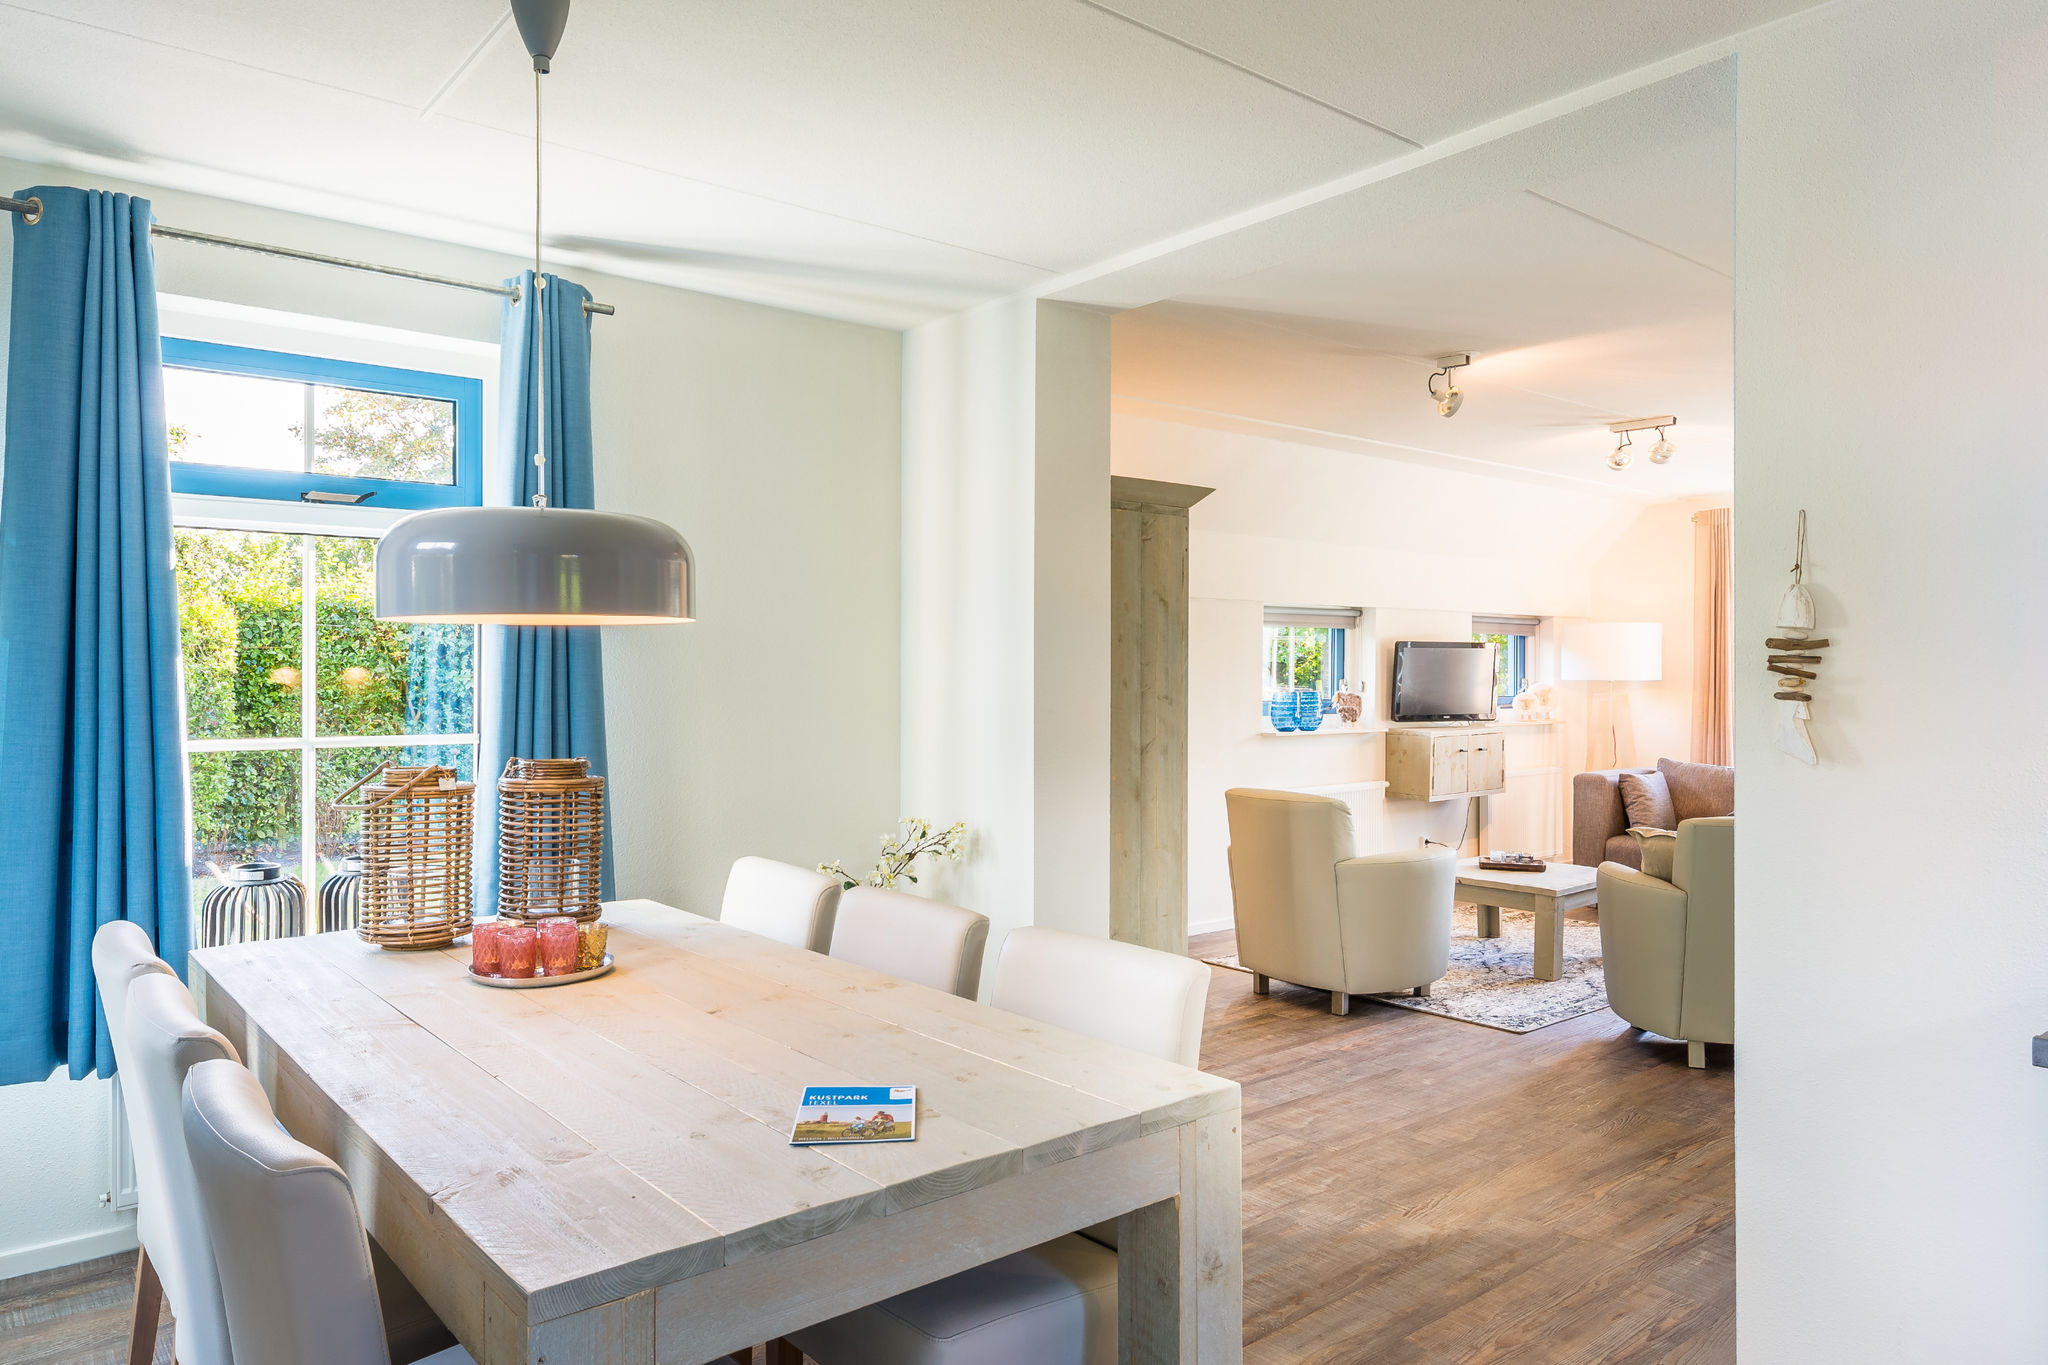 Villa in landhuisstijl met 2 badkamers 2 km van zee op Texel